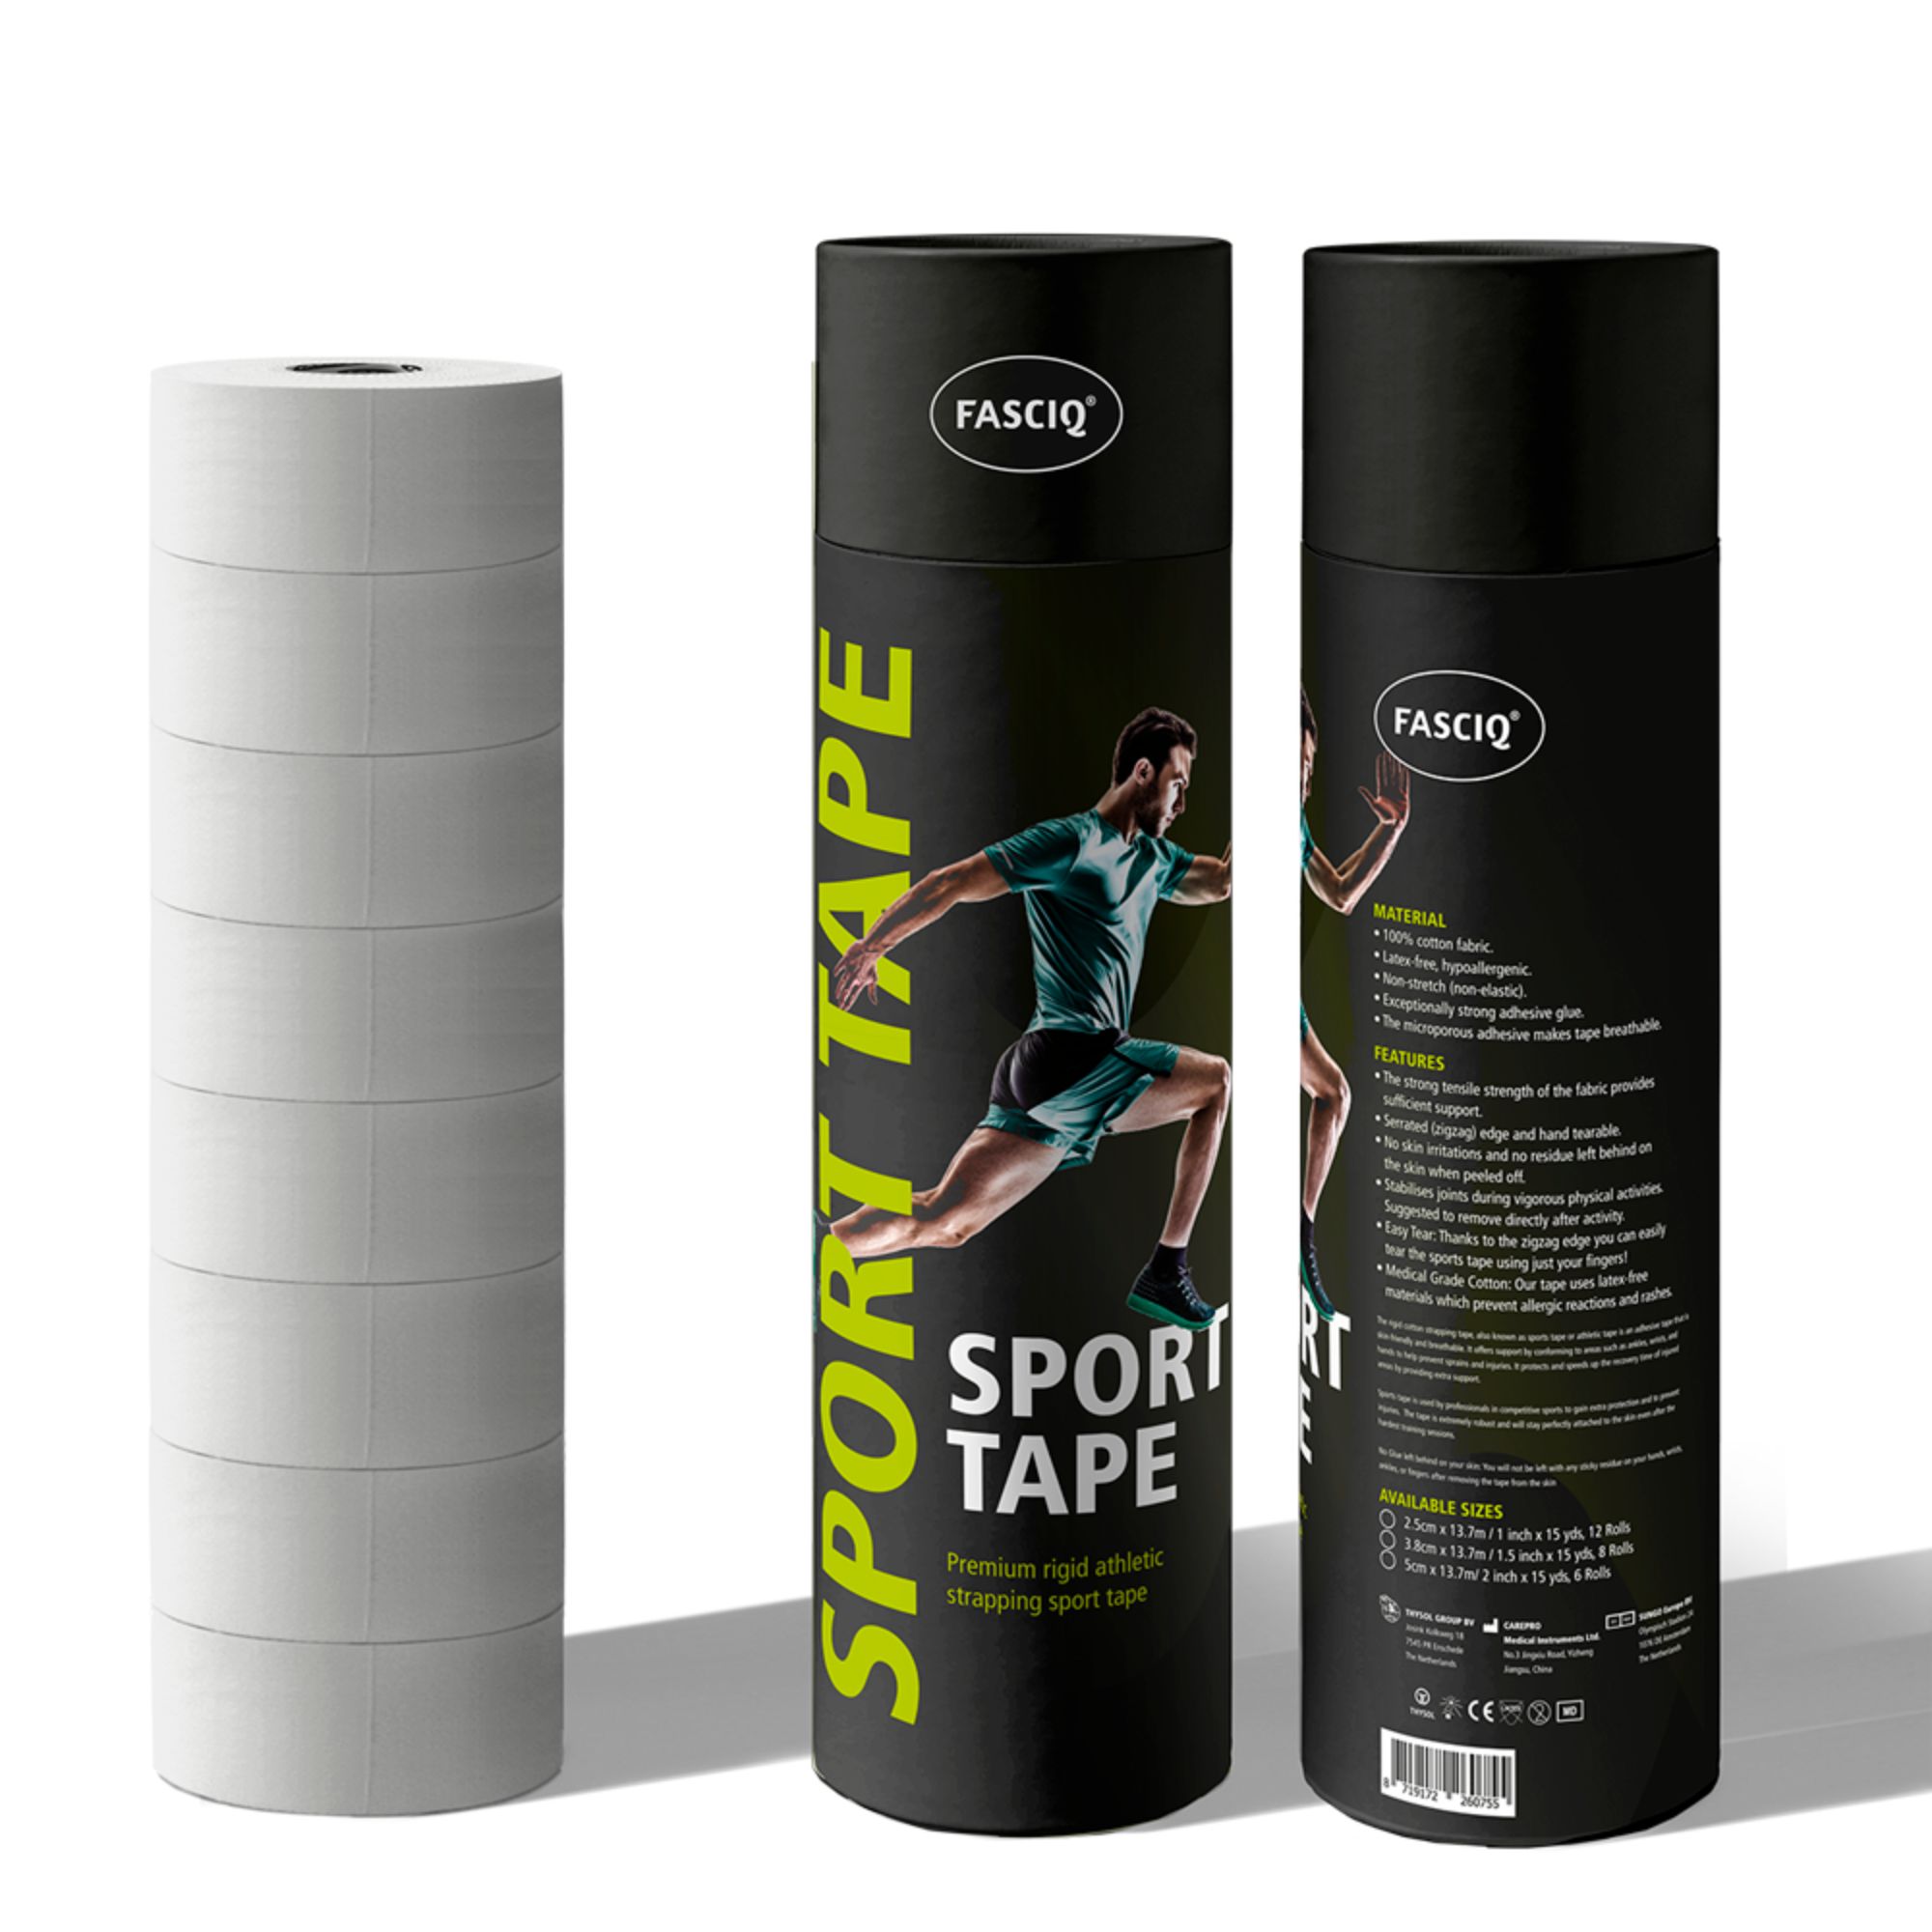 FASCIQ Rigid Sport Strapping Tape